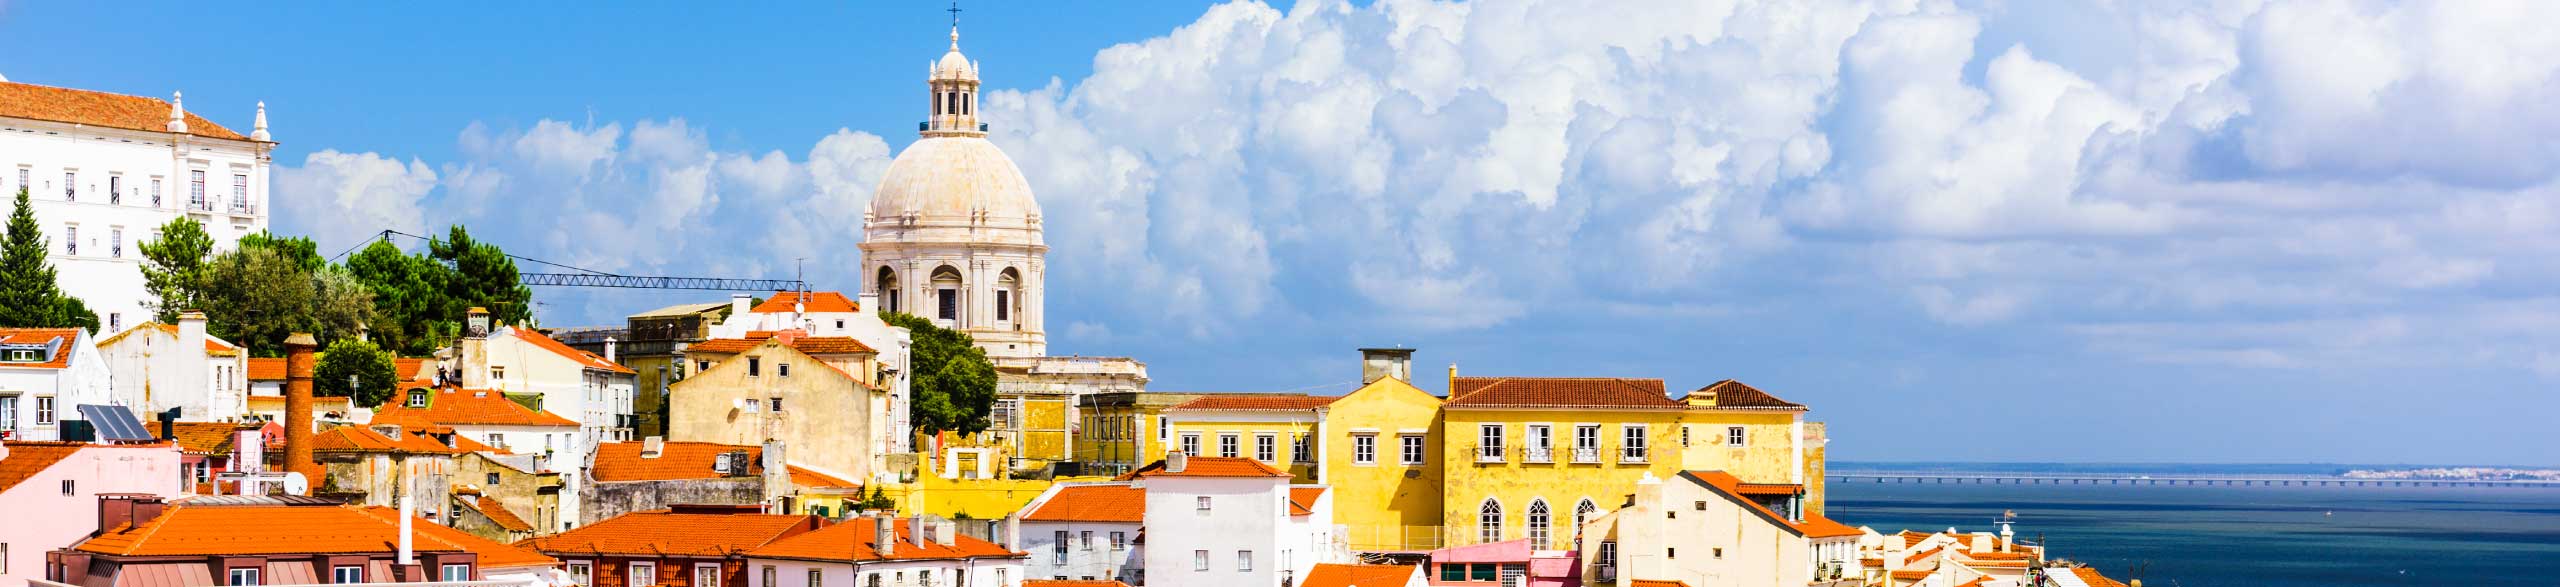 Escape tourist groups with unique tour experiences in Lisbon